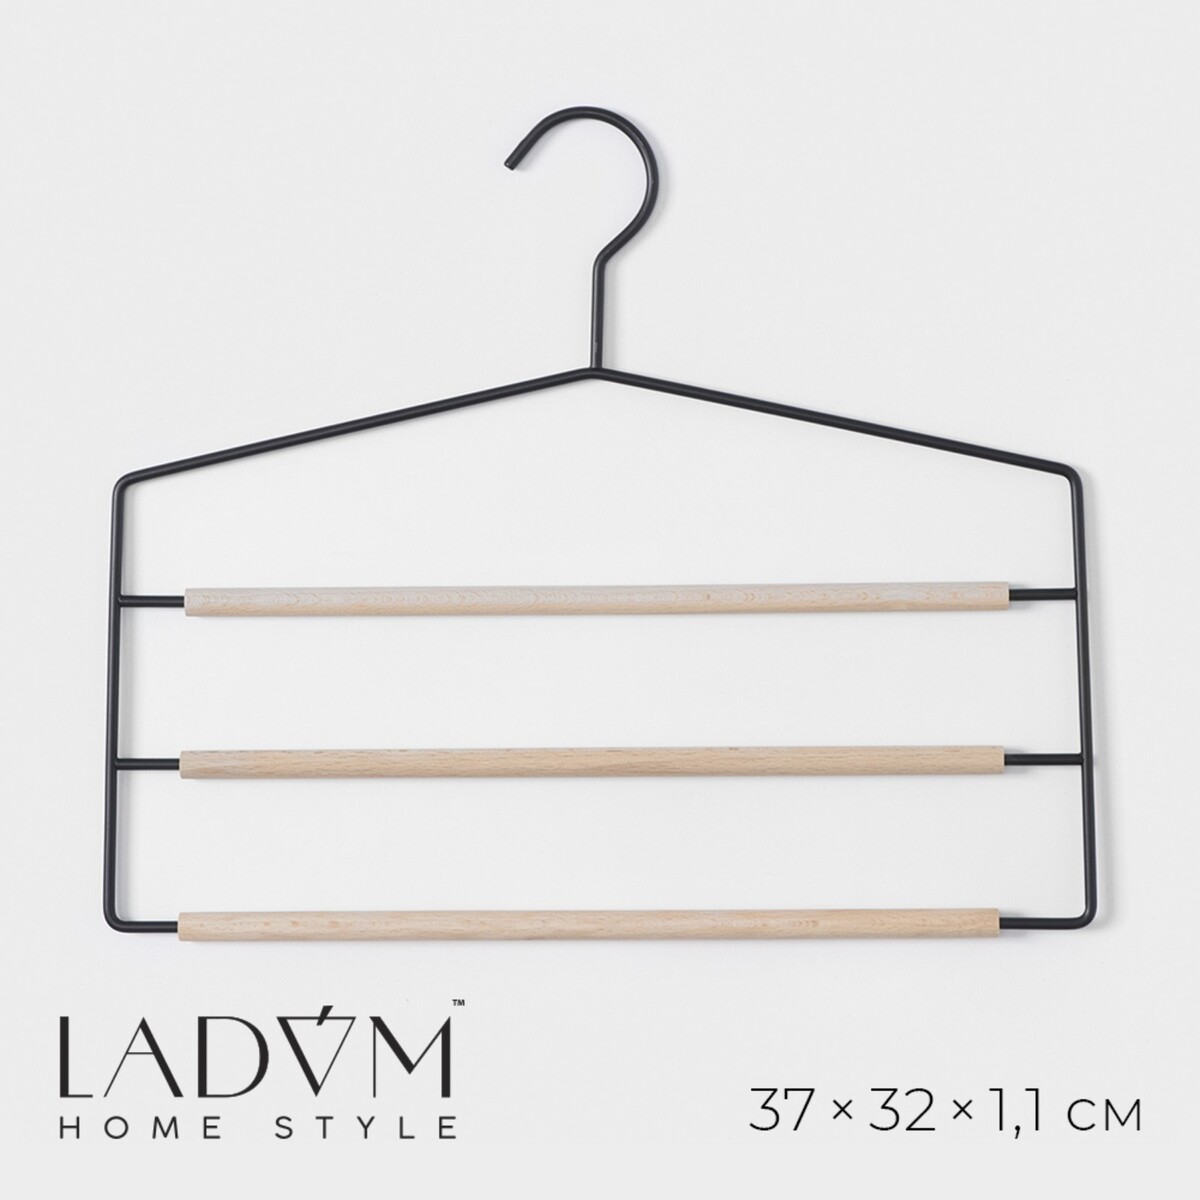 Плечики - вешалки для брюк и юбок многоуровневые ladо́m laconique, 37×31,5×1,1 см, цвет черный плечики вешалка для одежды ladо́m laconique 42×19 5×1см